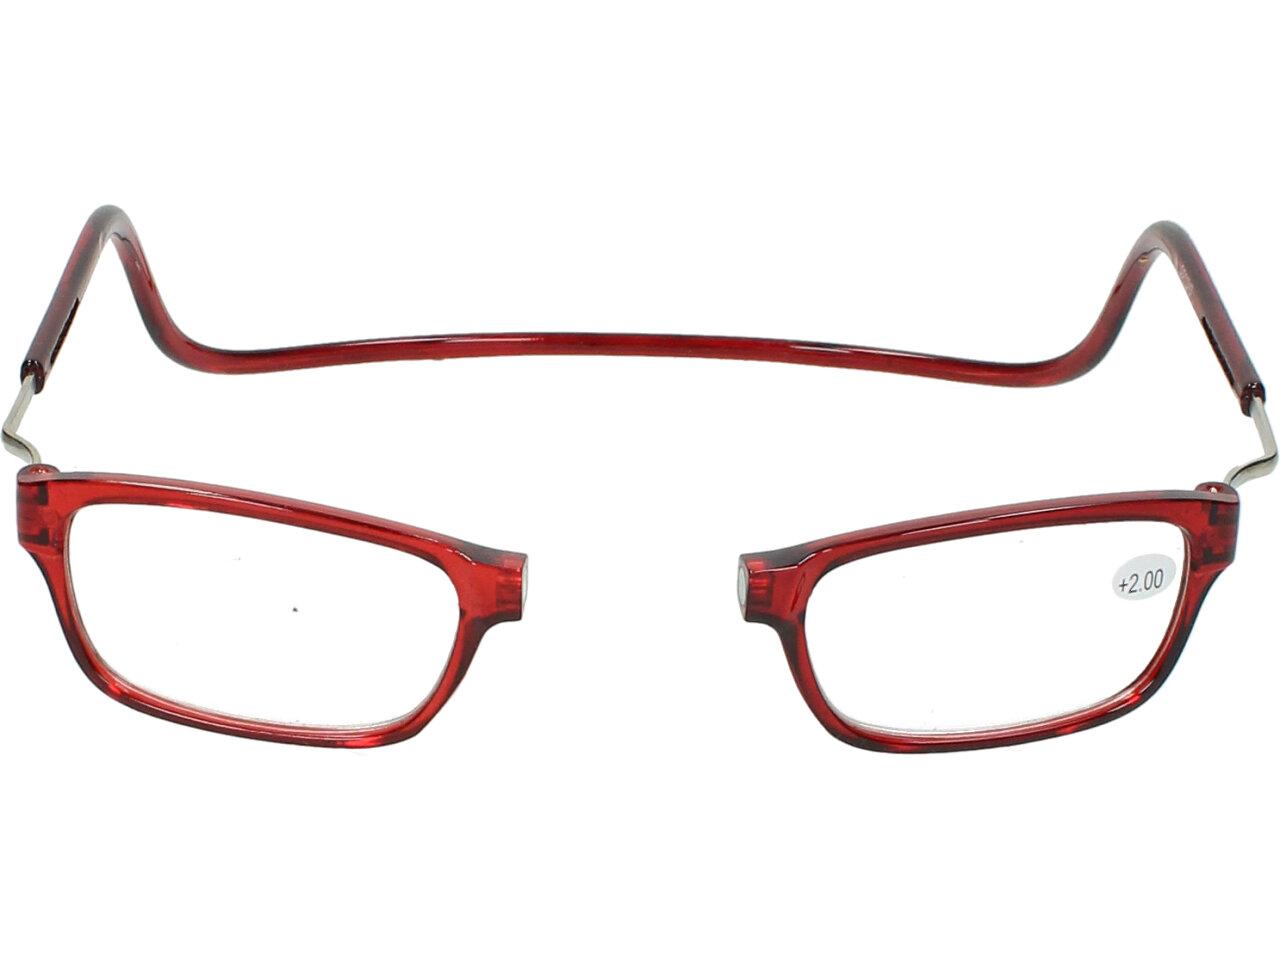 Dioptrické brýle s magnetem červené +2,00